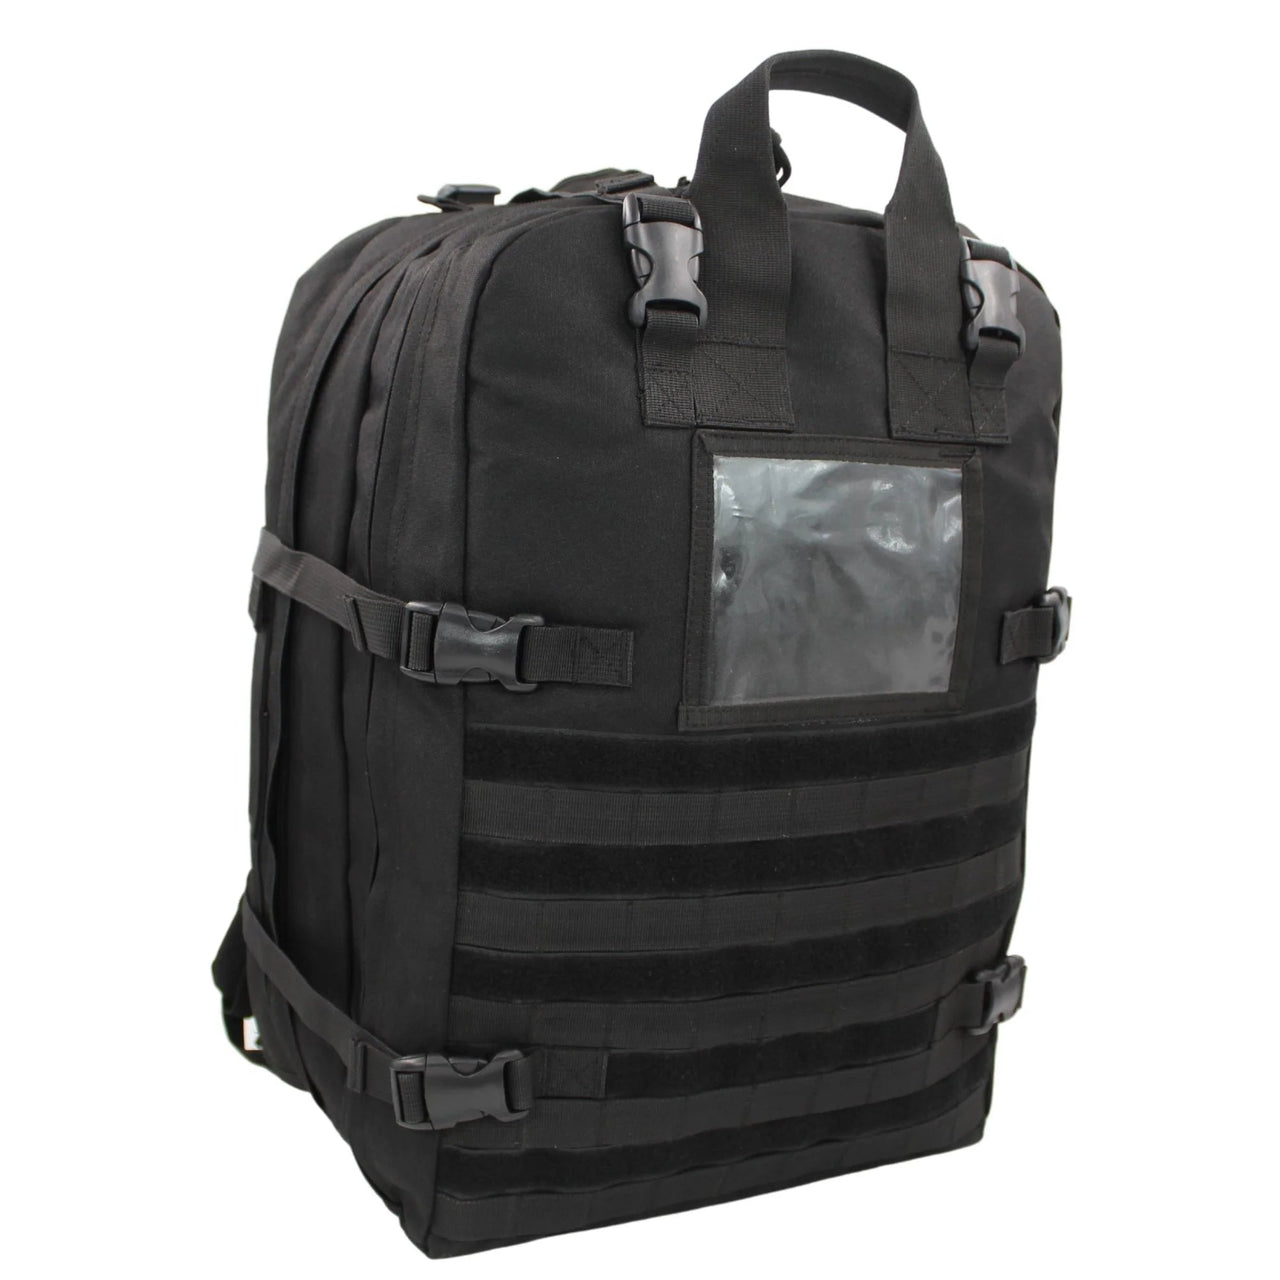 STOMP Bag and Medical Kit - MED-TAC International Corp. - MED-TAC International Corp.